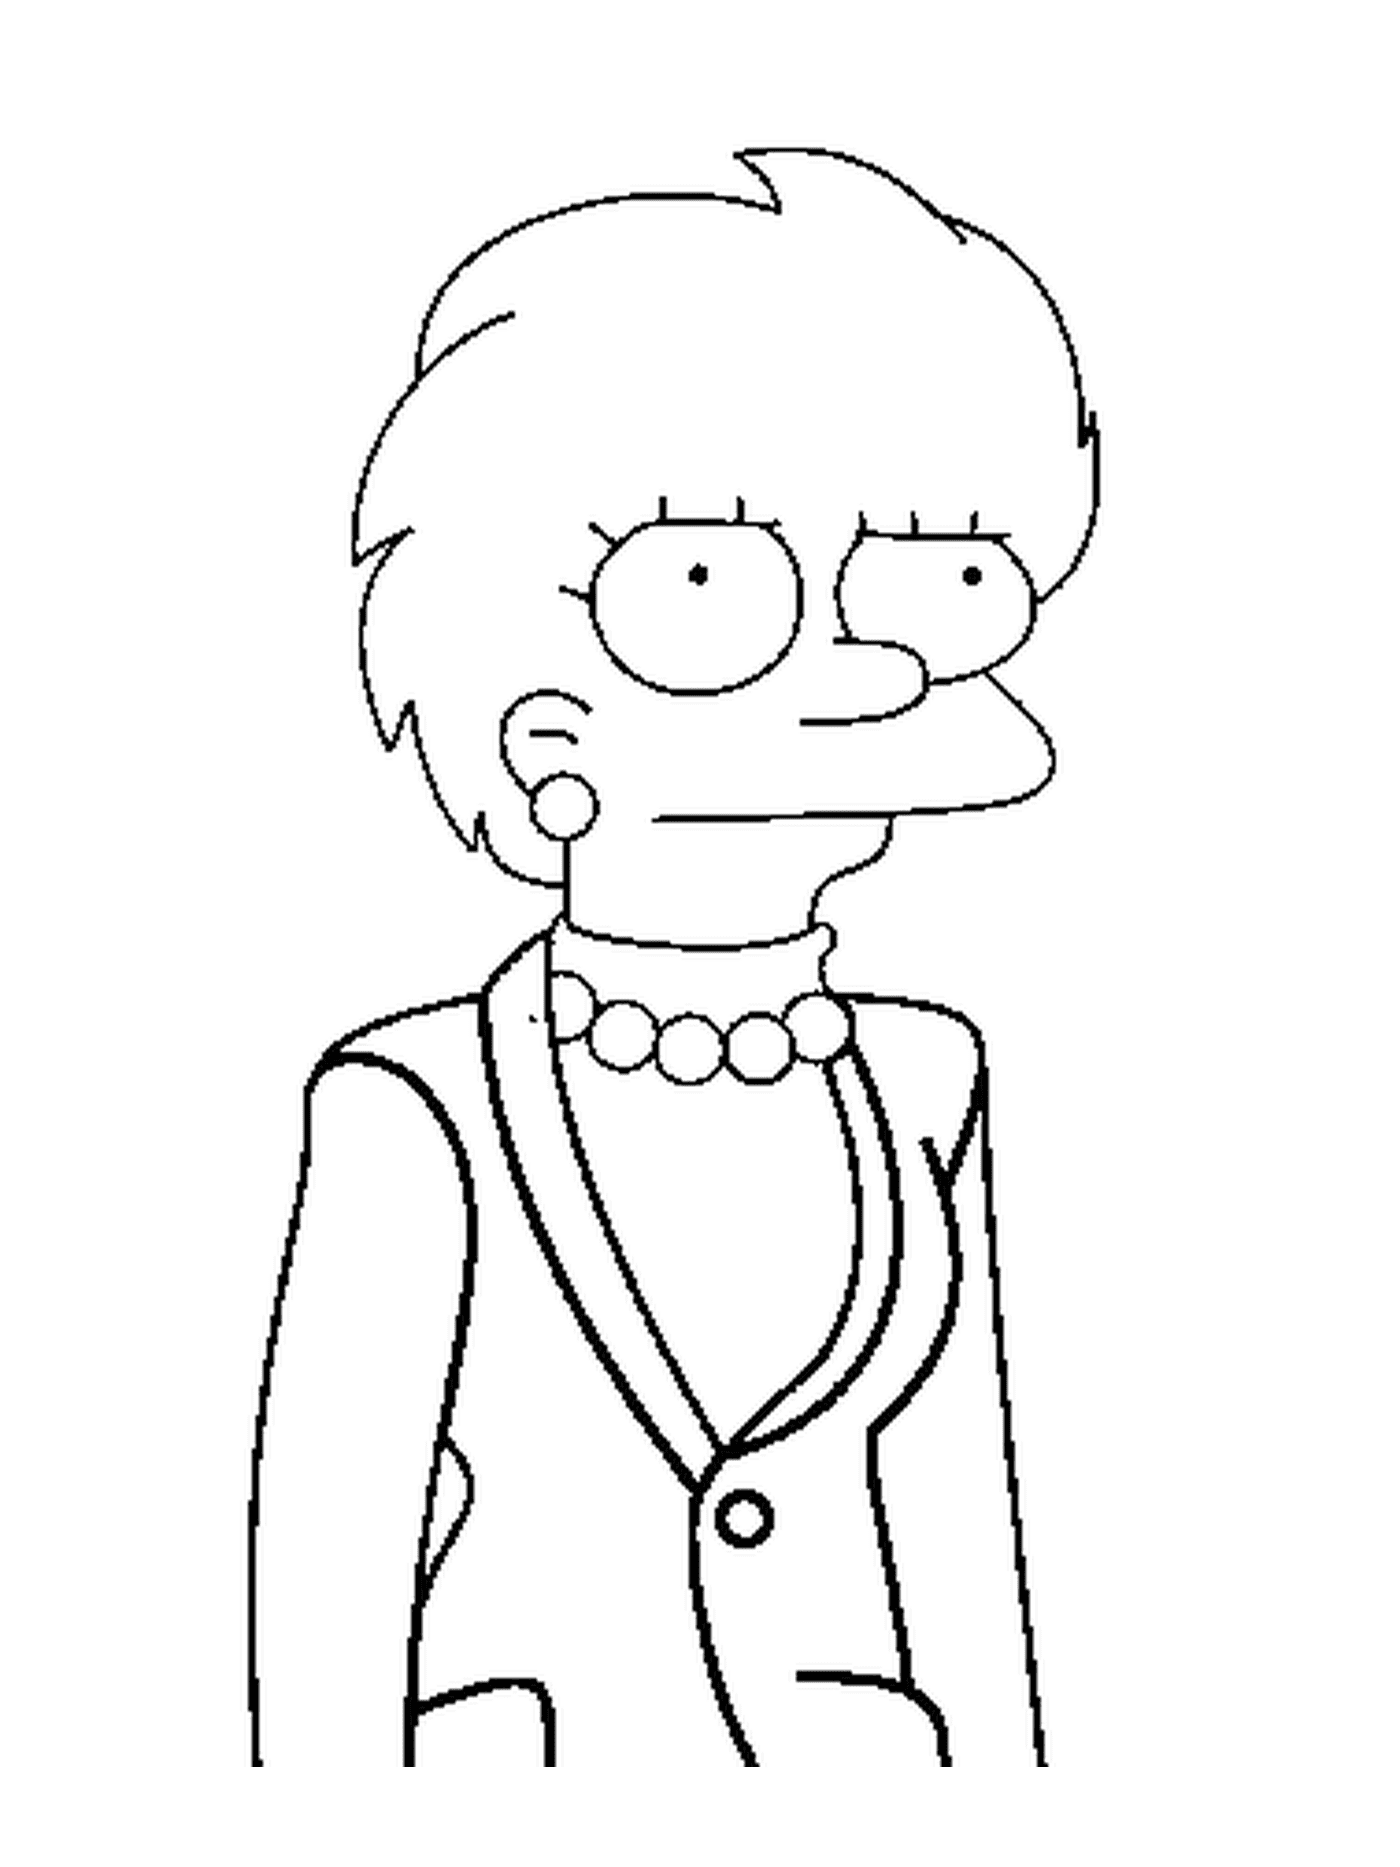  Lisa Simpson, zukünftige Präsidentin 